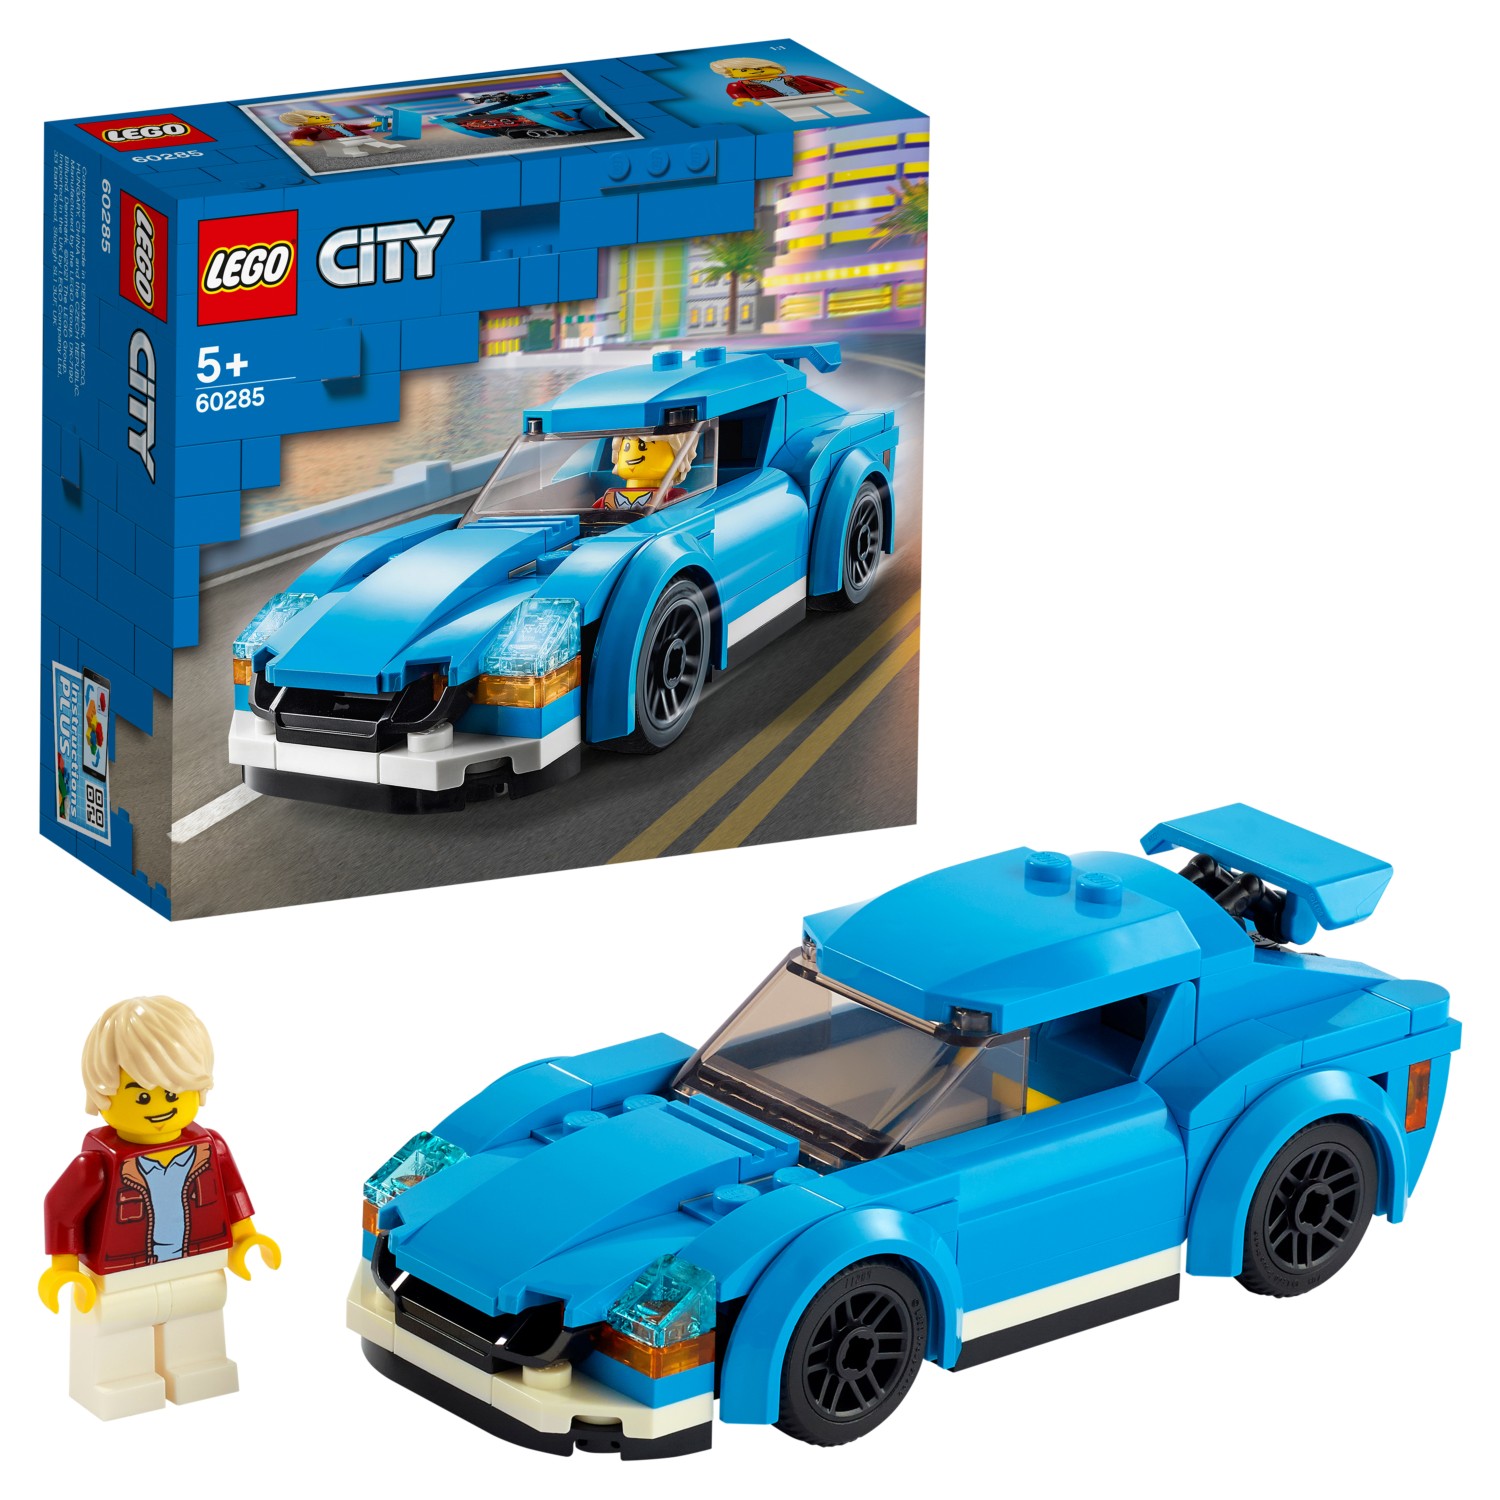 Конструктор LEGO City Great Vehicles 60285 Спортивный автомобиль конструктор lego city great vehicles багги 60145